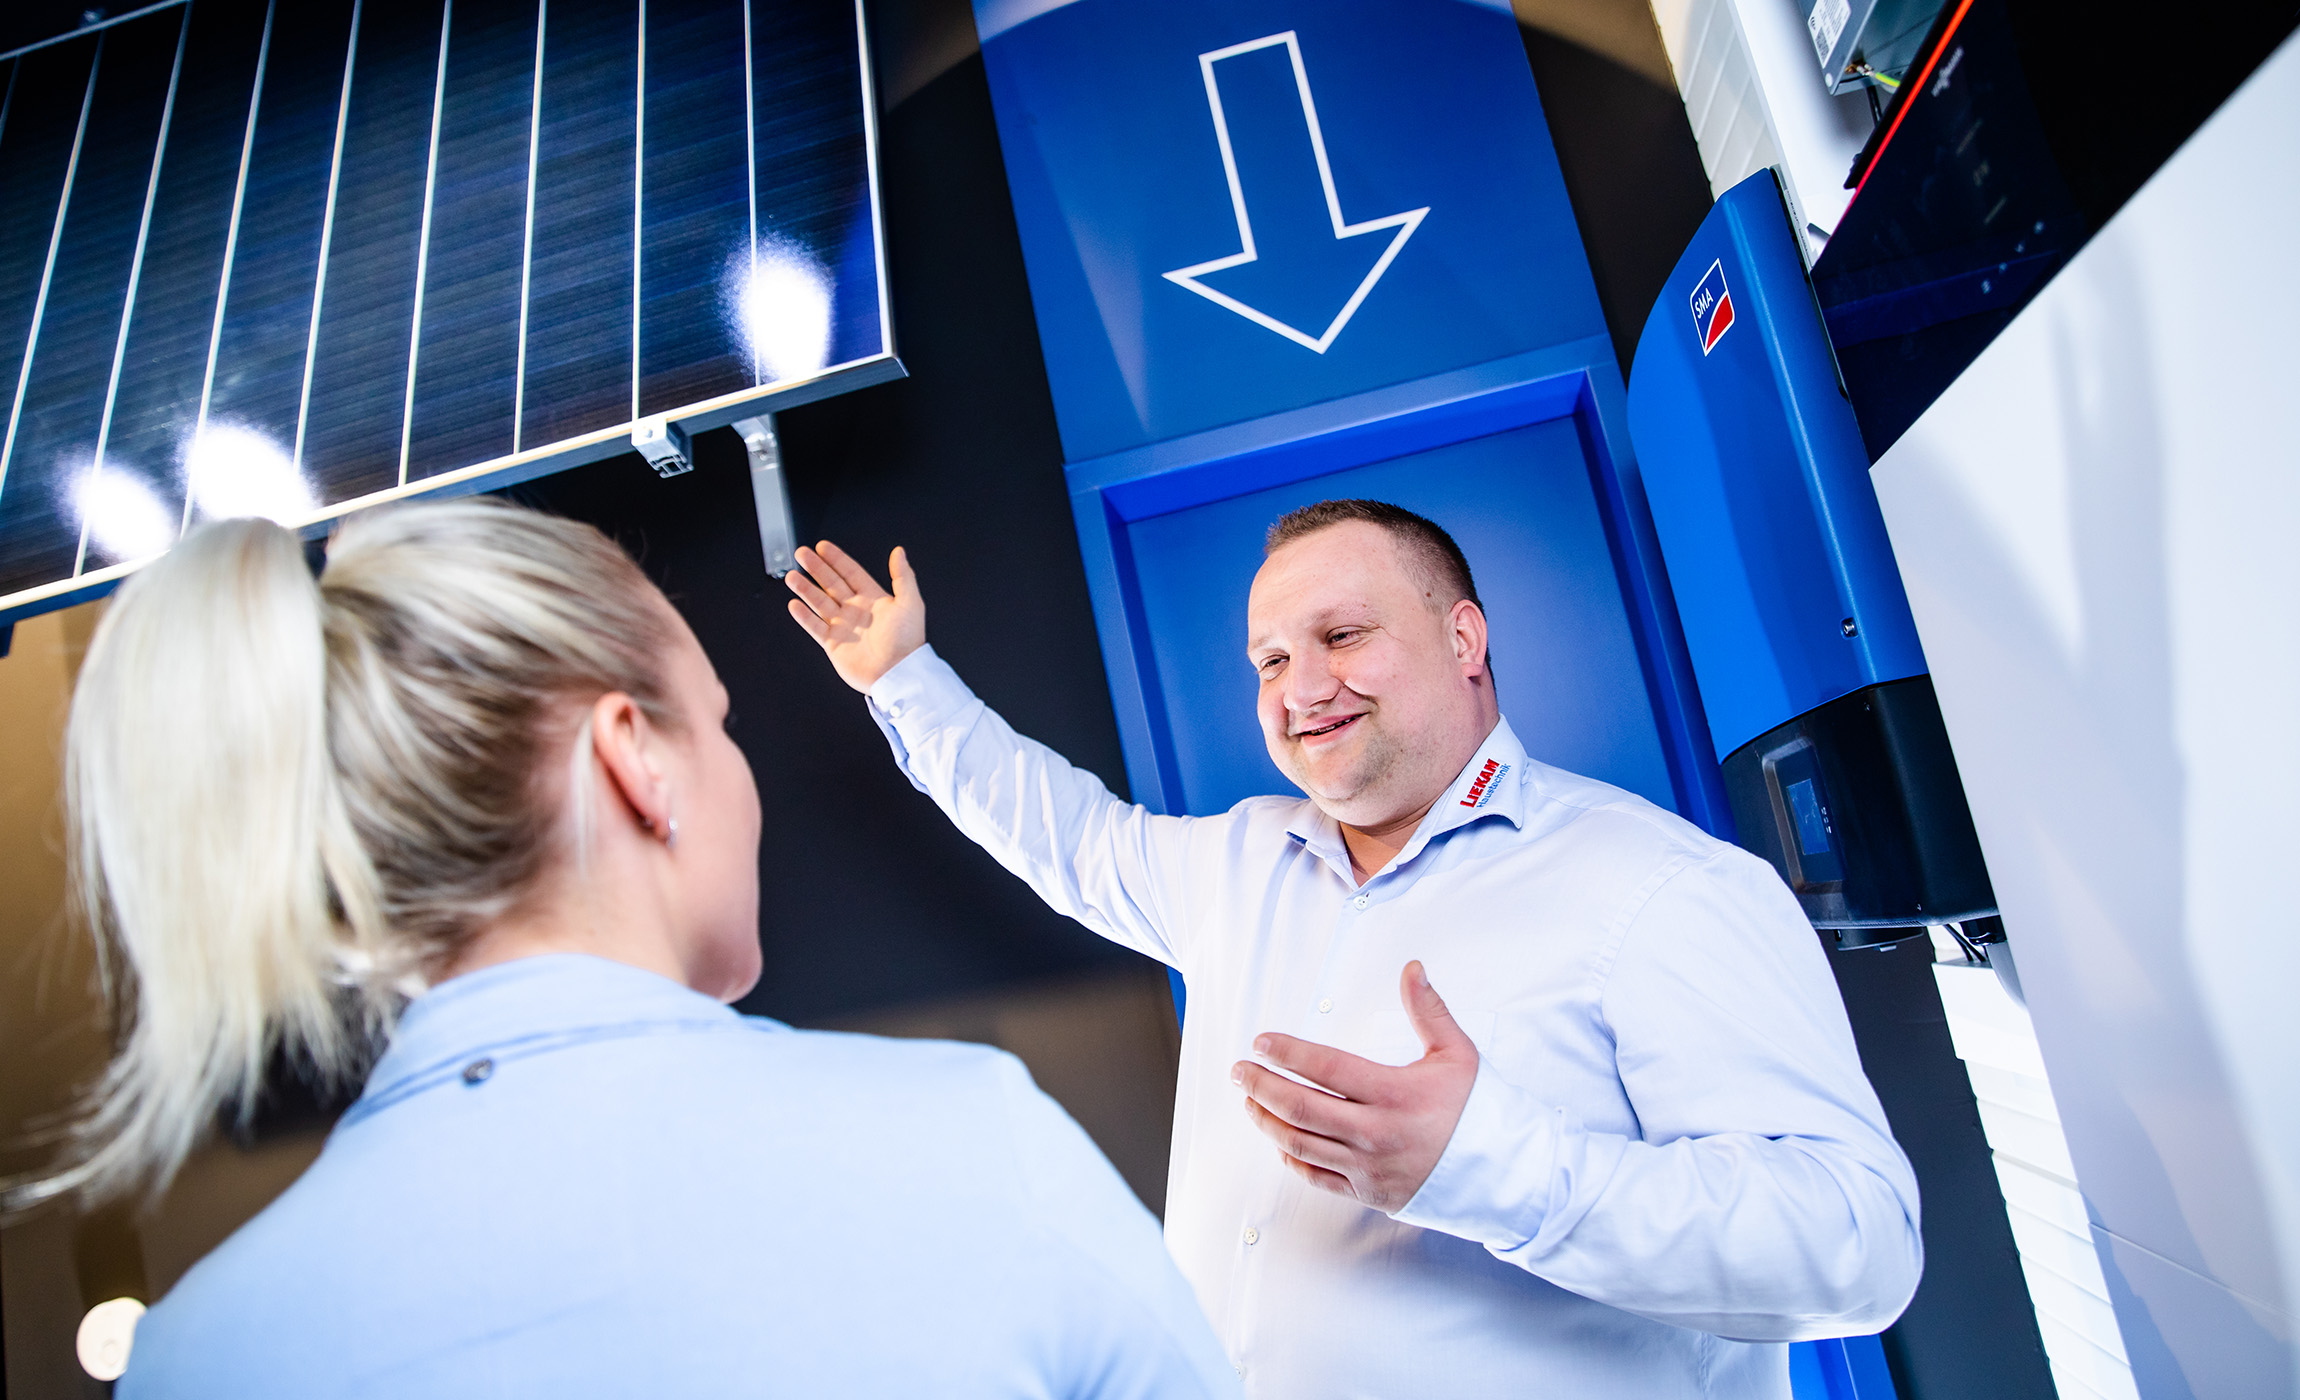 Liekam-Berater erklärt Kundin Photovoltaik-Anlage